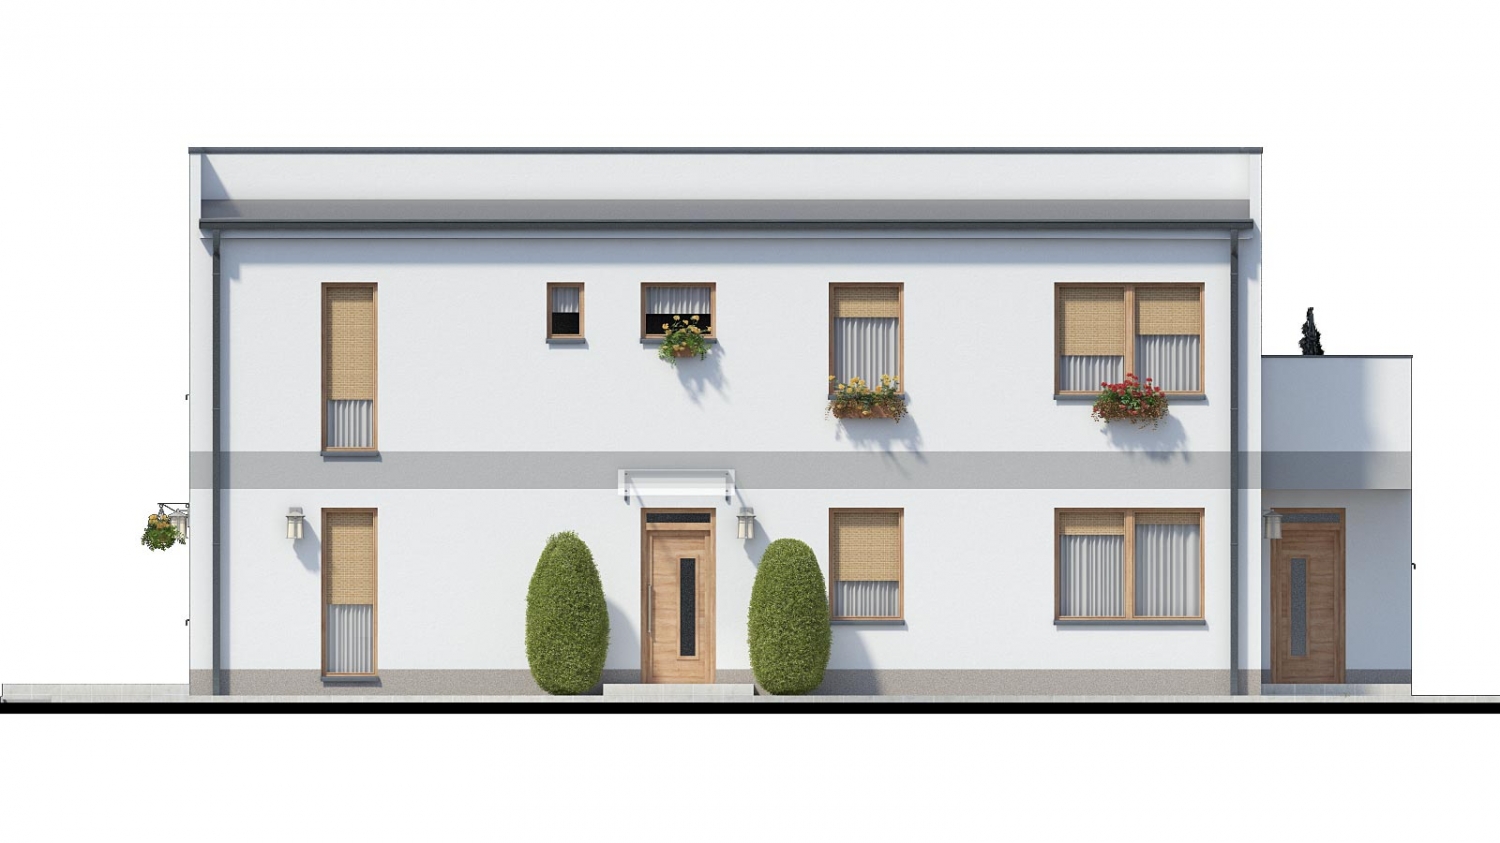 Pohľad 1. - Zděný dům se dvěma bytovými jednotkami a samostatnými vstupy.